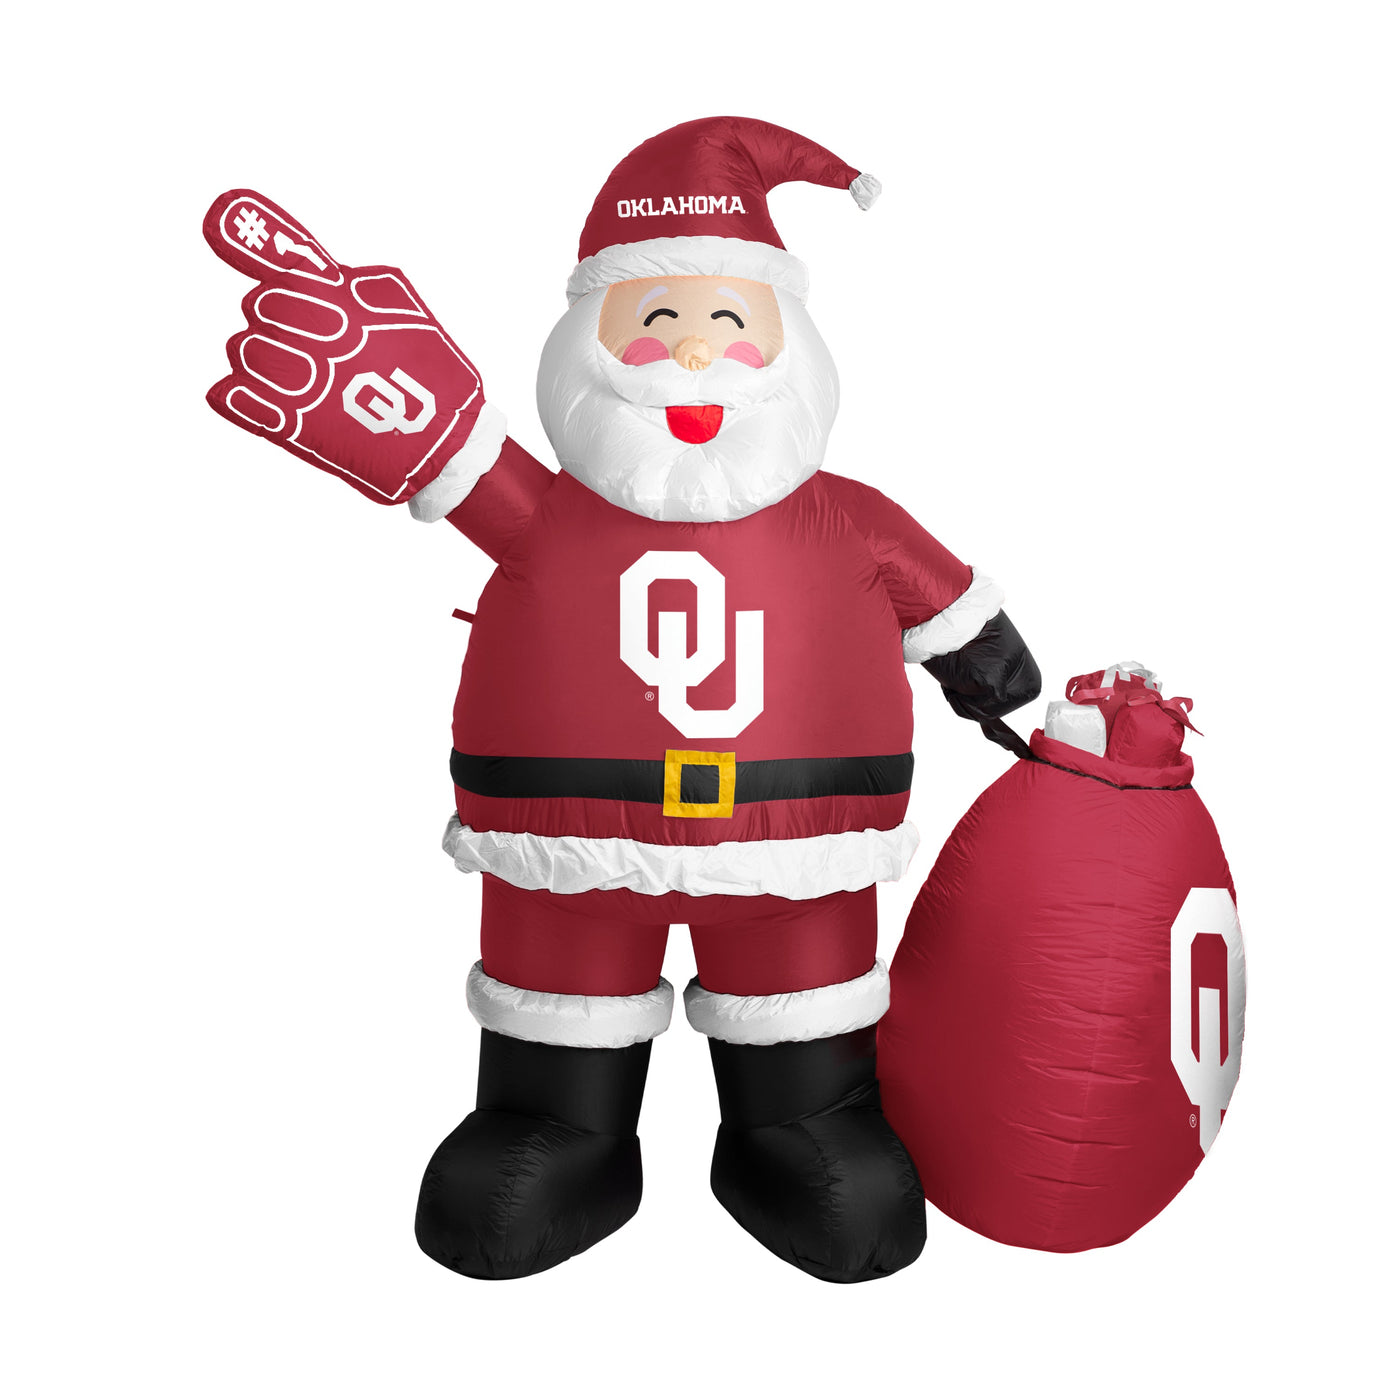 Oklahoma Santa Claus Yard Inflatable